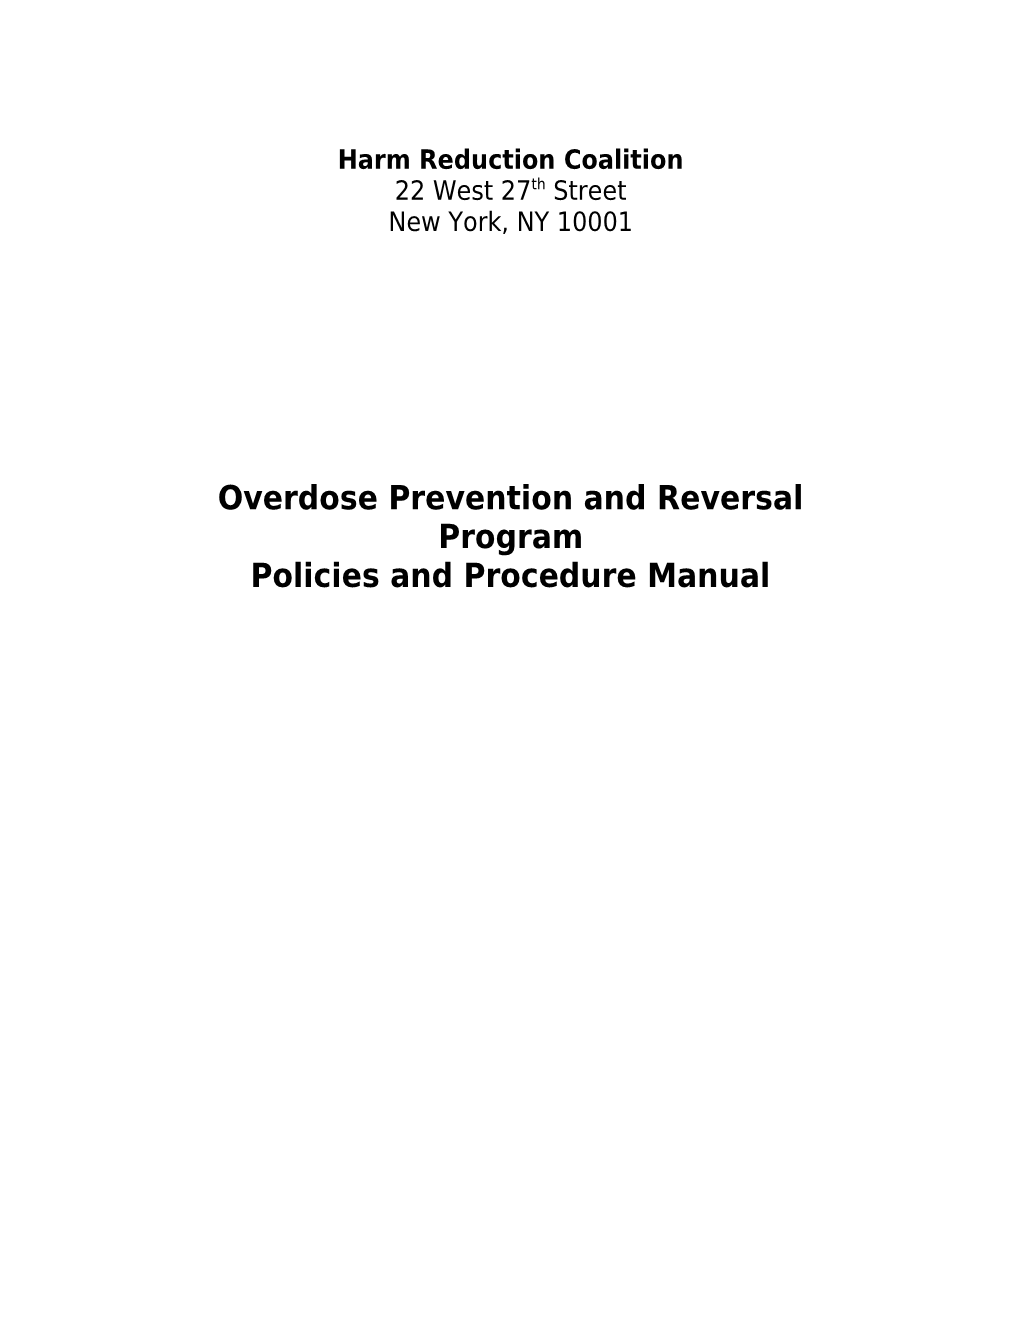 Overdose Prevention and Reversal Program